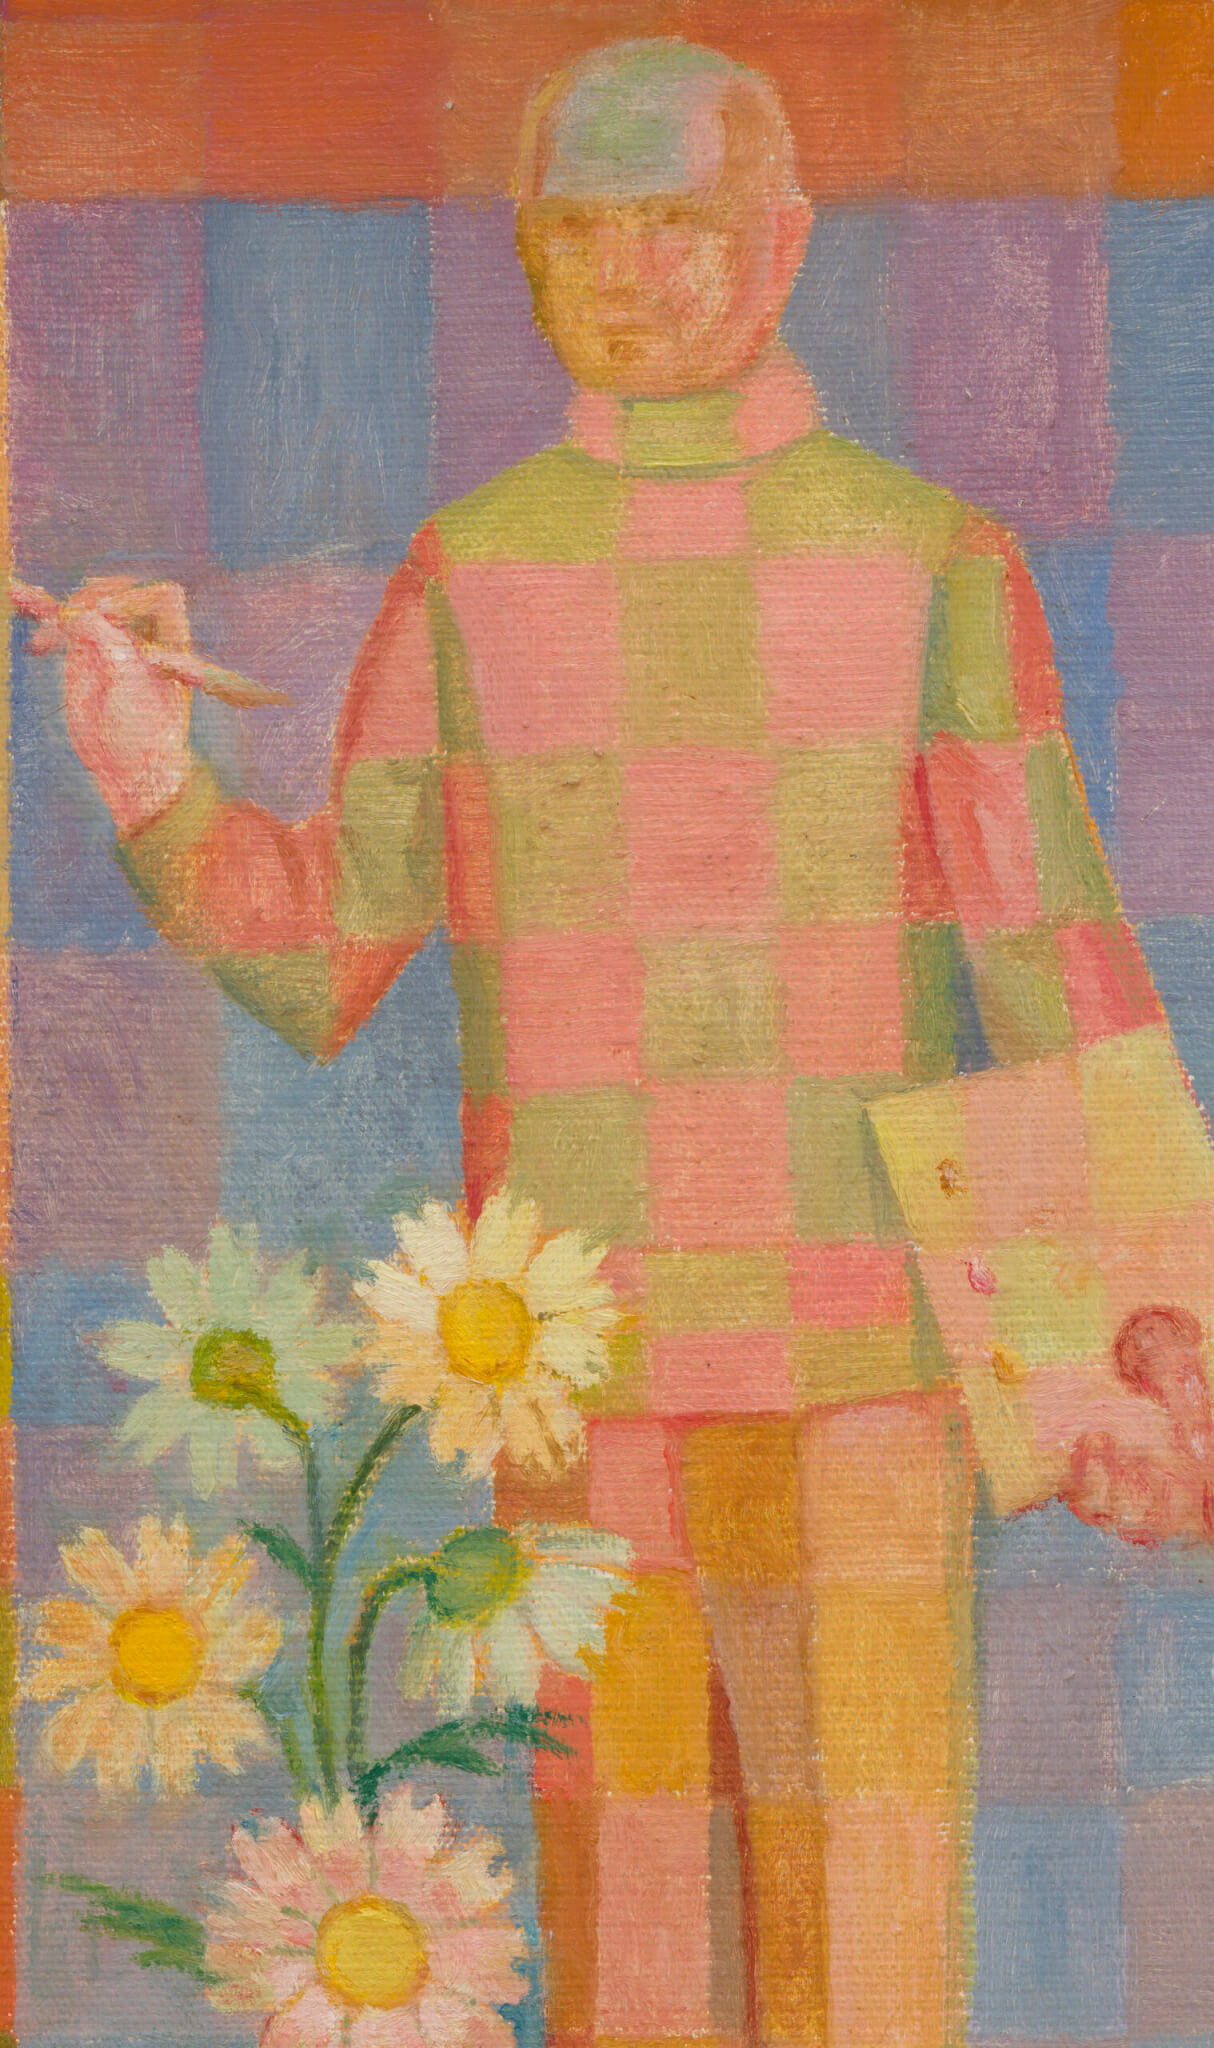 Olav Maran “Vaikelu sinises”, 2009. 27 x 35 cm.